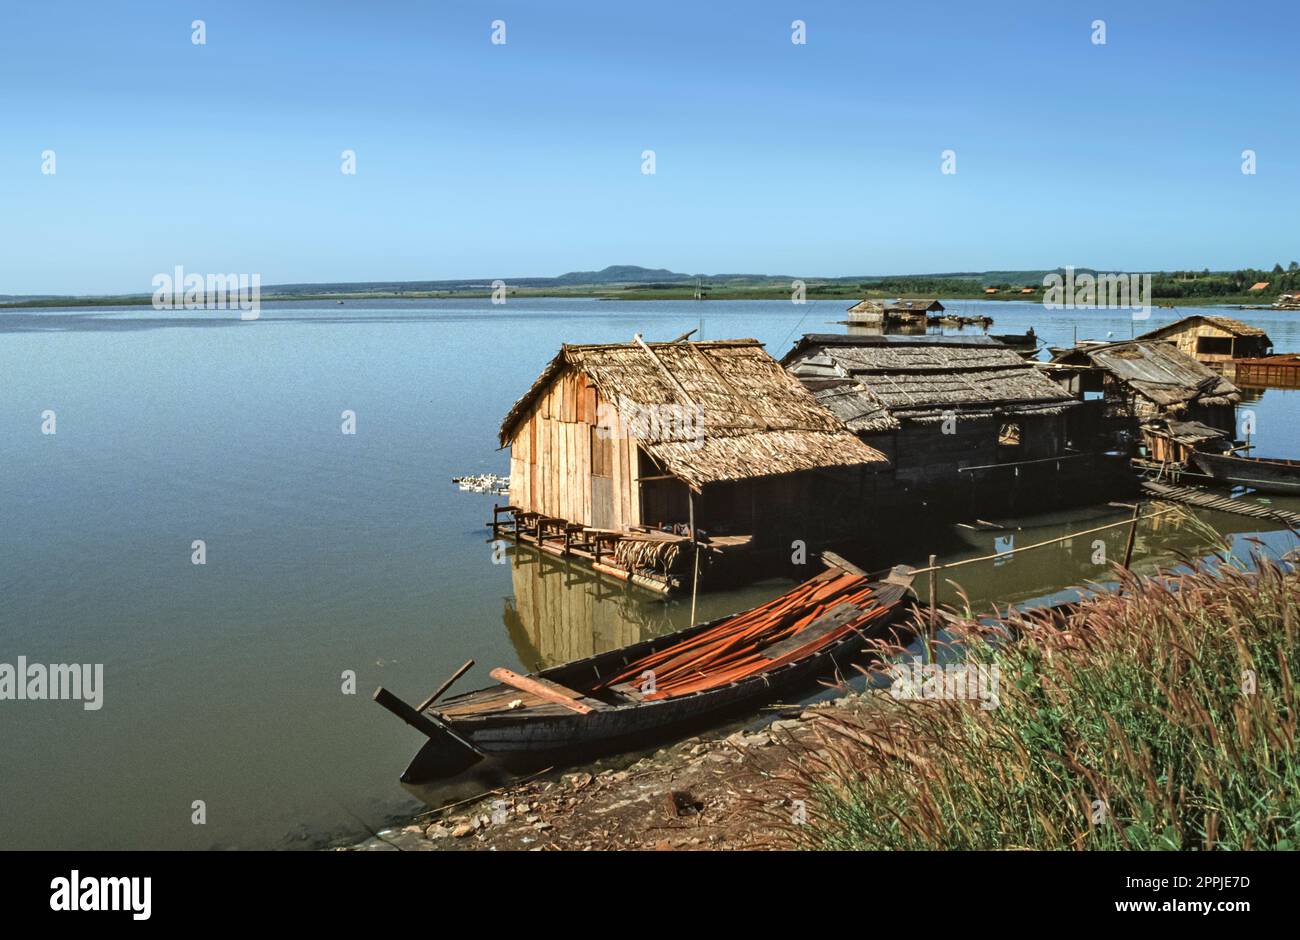 Gescannte Folie mit historischem Farbfoto von Fischerbooten, die in einer Siedlung am Ufer eines Sees im Zentrum Vietnams anlegen Stockfoto